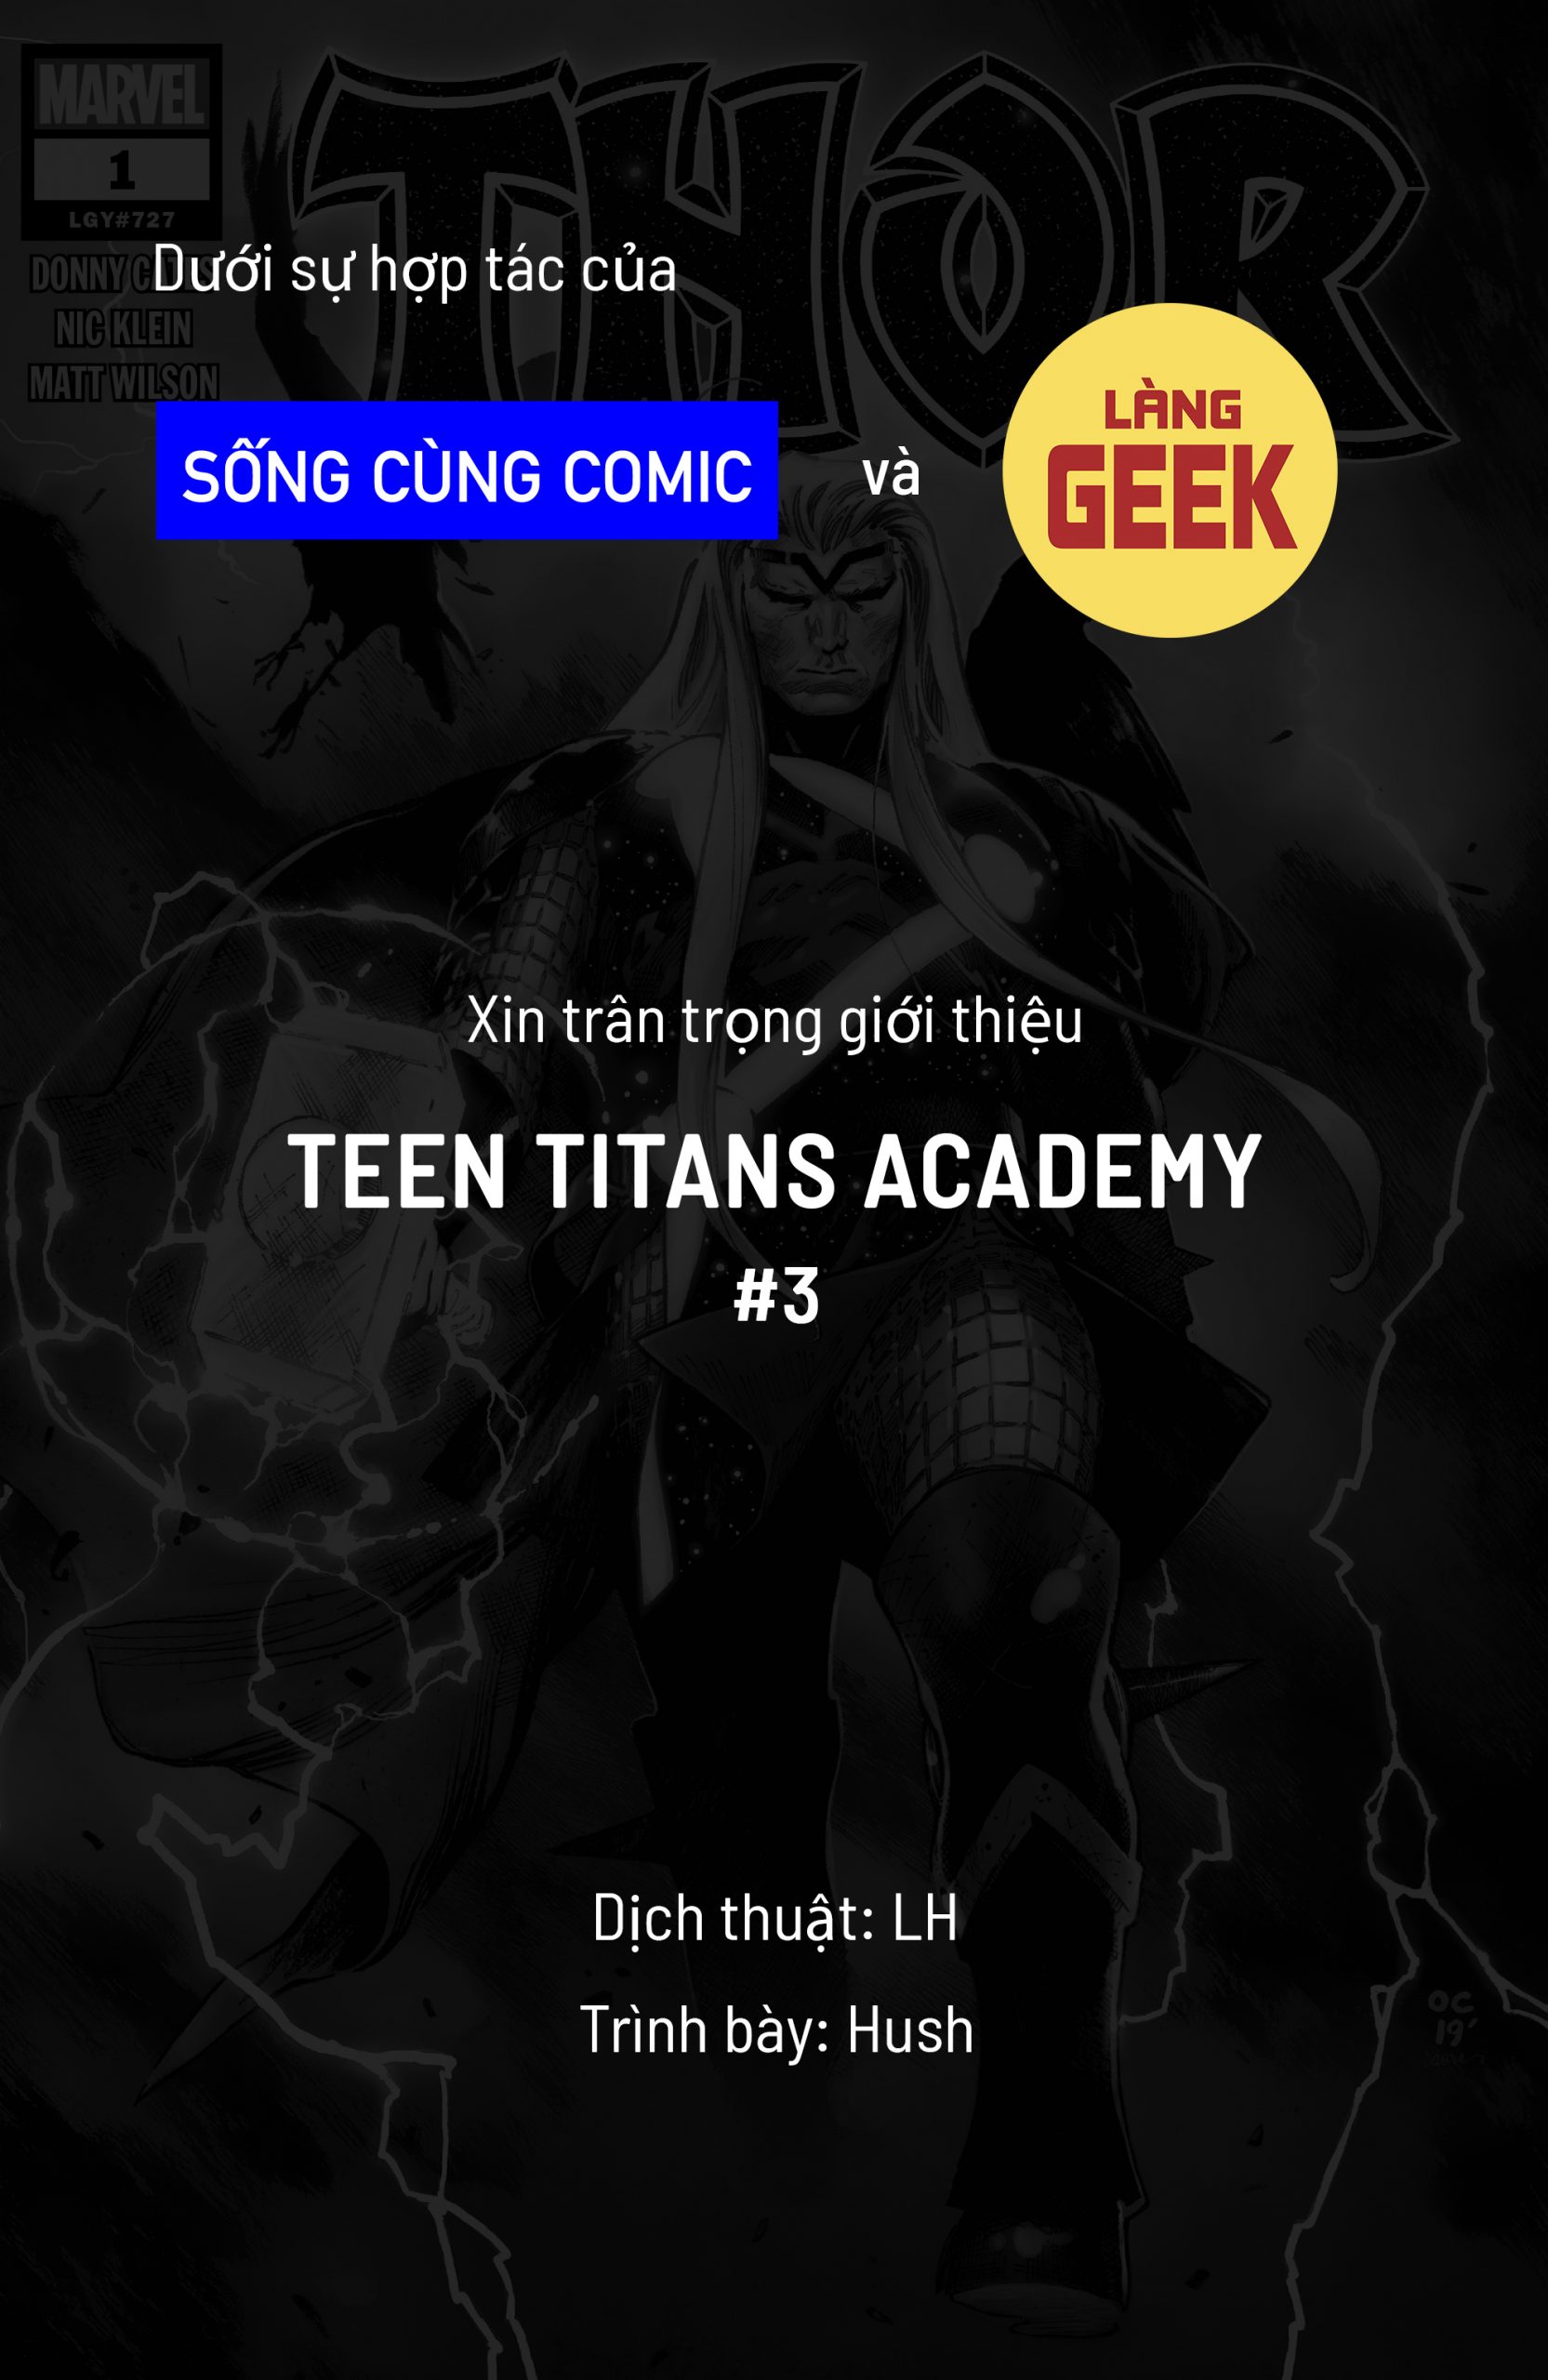 https://langgeek.net/wp-content/webpc-passthru.php?src=https://langgeek.net/wp-content/uploads/2021/11/Teen-Titans-Academy-2021-003-00-scaled.jpg&nocache=1